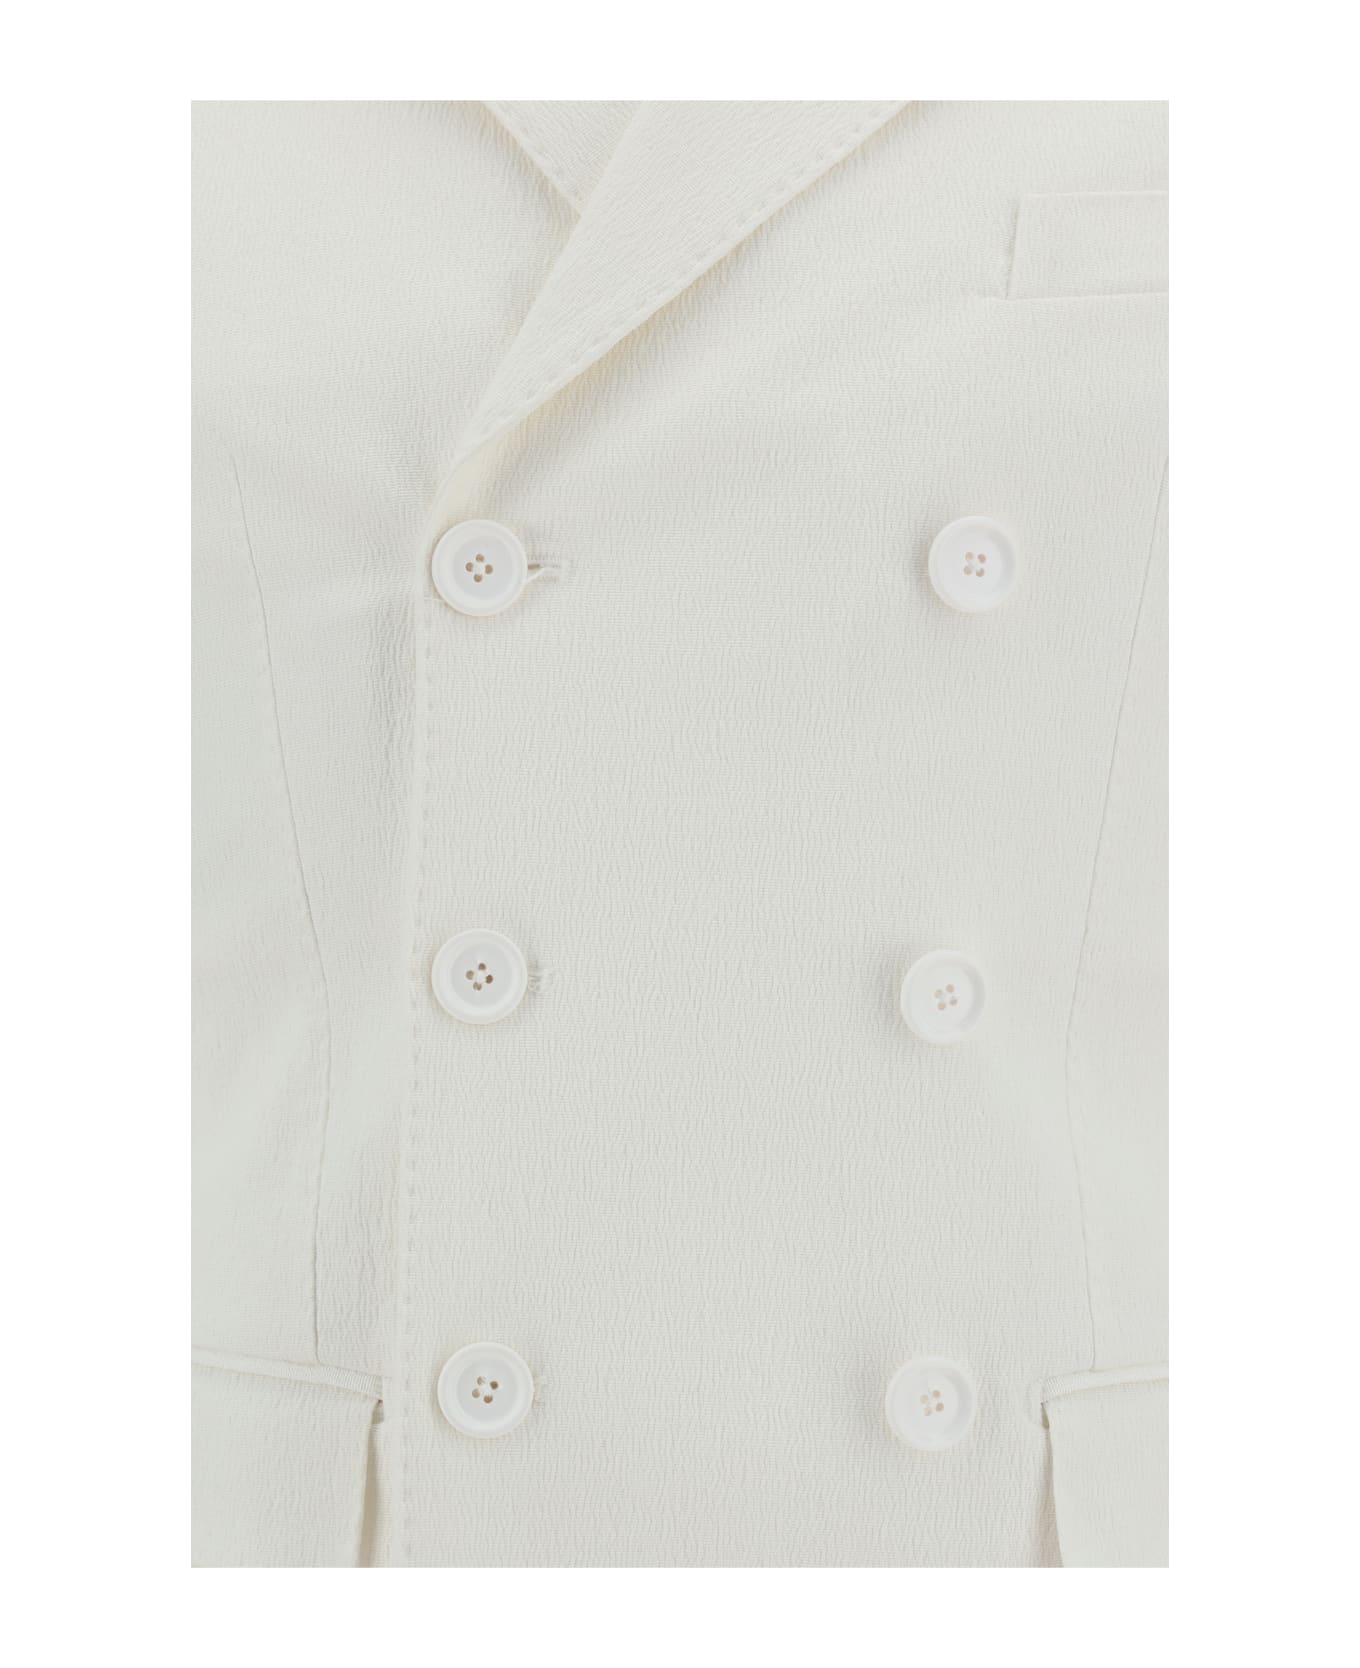 Dolce & Gabbana Double-breasted Jacket - Bianco Ottico